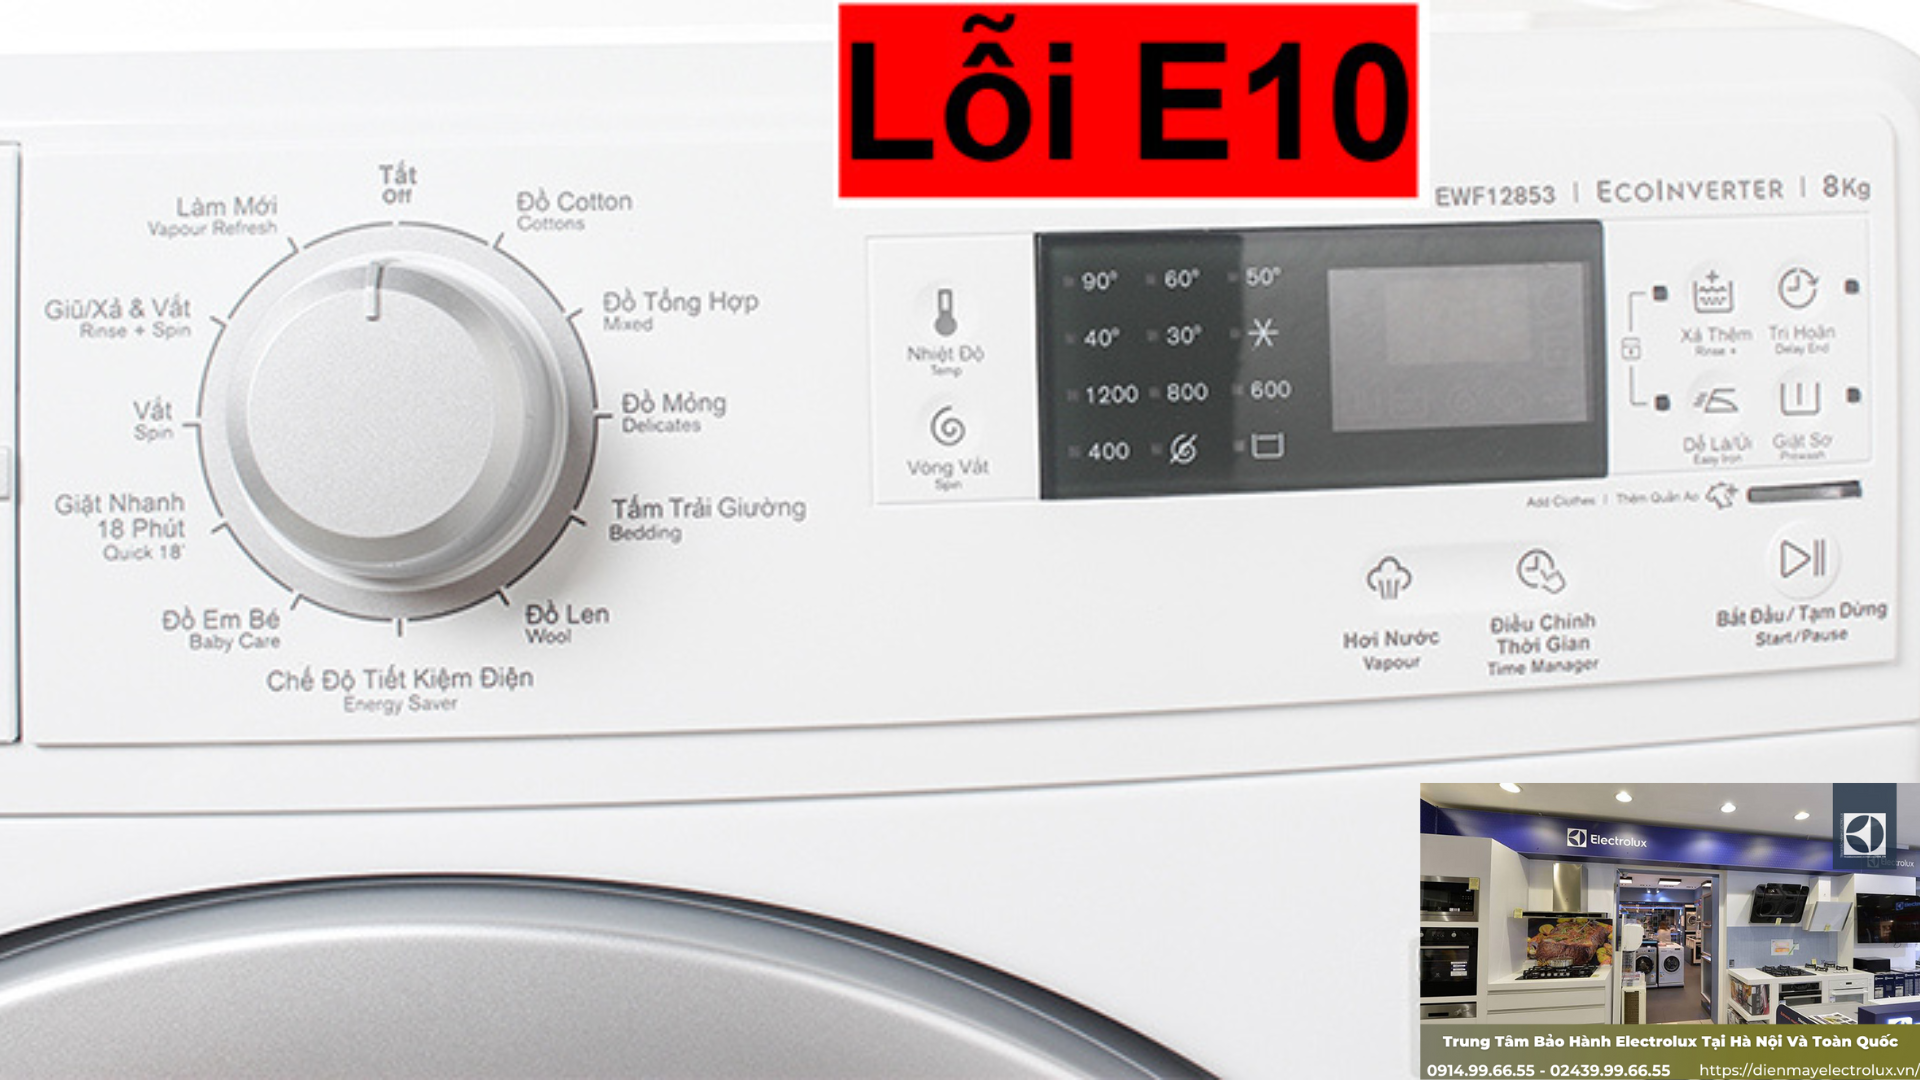 Sửa máy giặt Electrolux Báo Lỗi E20 tại Hà Nội | by Ngọc Thảo | Medium